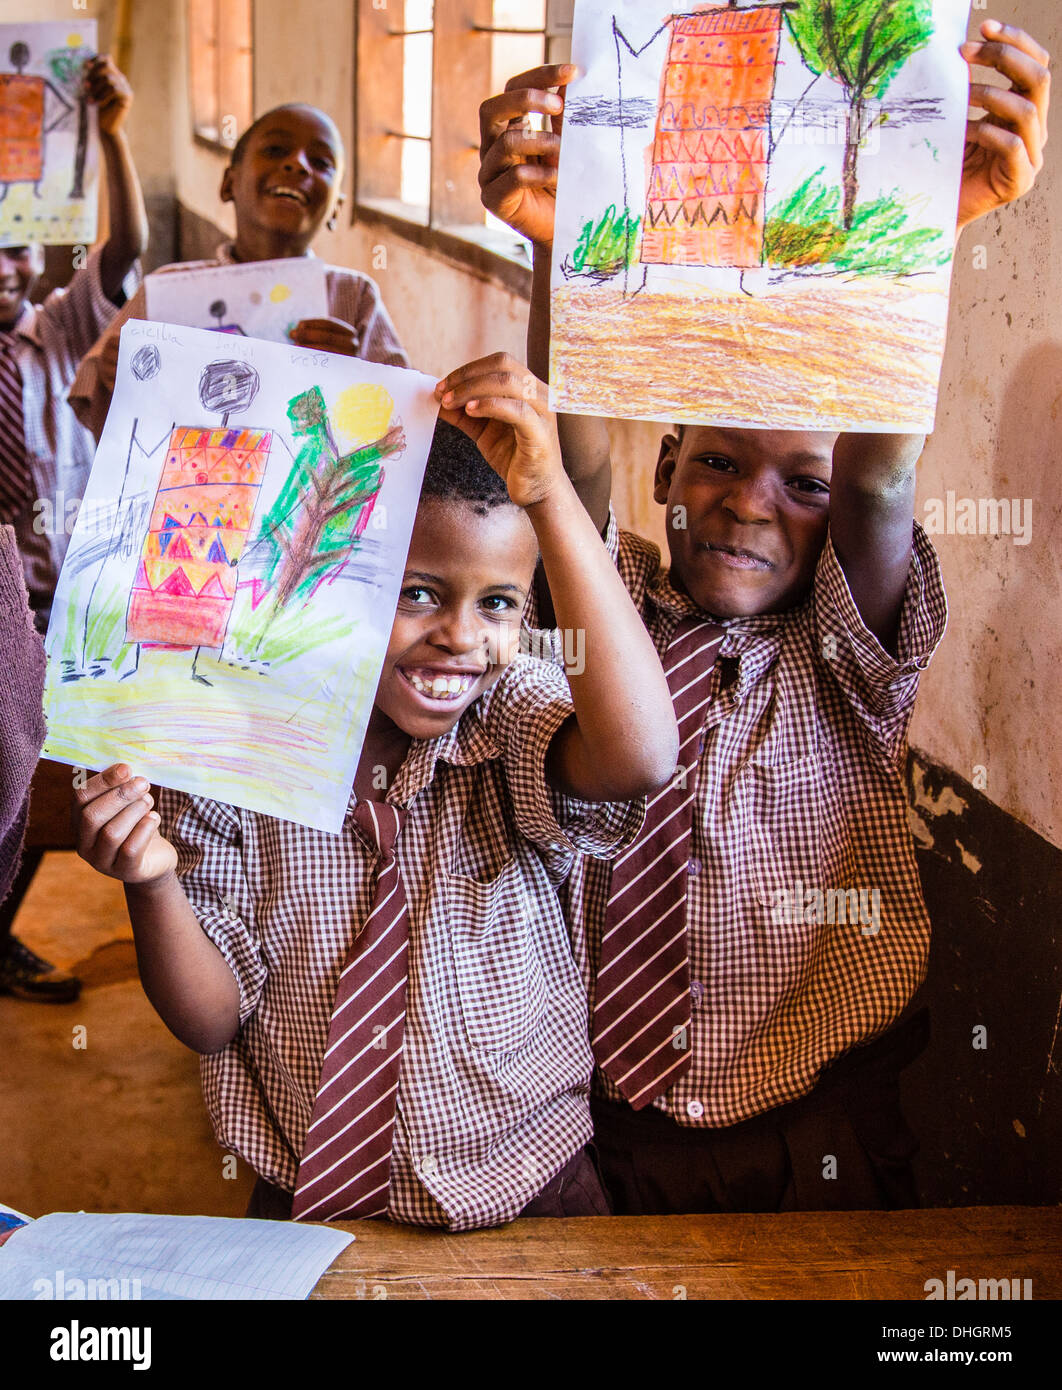 Les enfants dans une école primaire du Kenya holding fièrement leurs dessins en couleur durant une classe d'art Banque D'Images